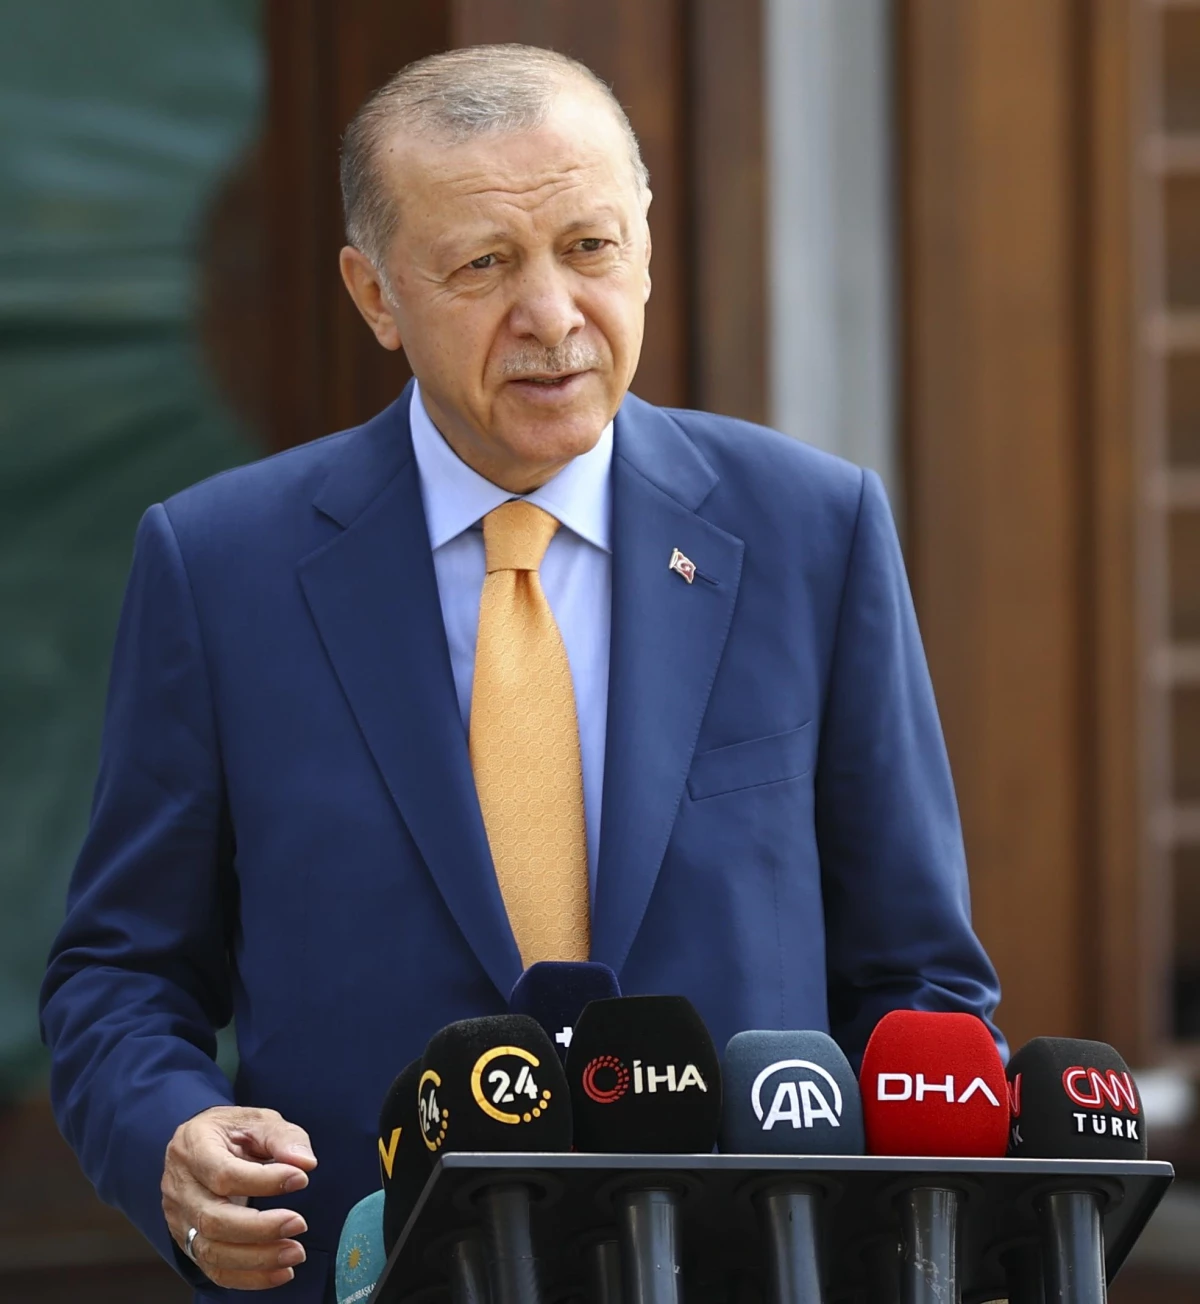 Cumhurbaşkanı Erdoğan, cuma namazı sonrası soruları yanıtladı: (2)